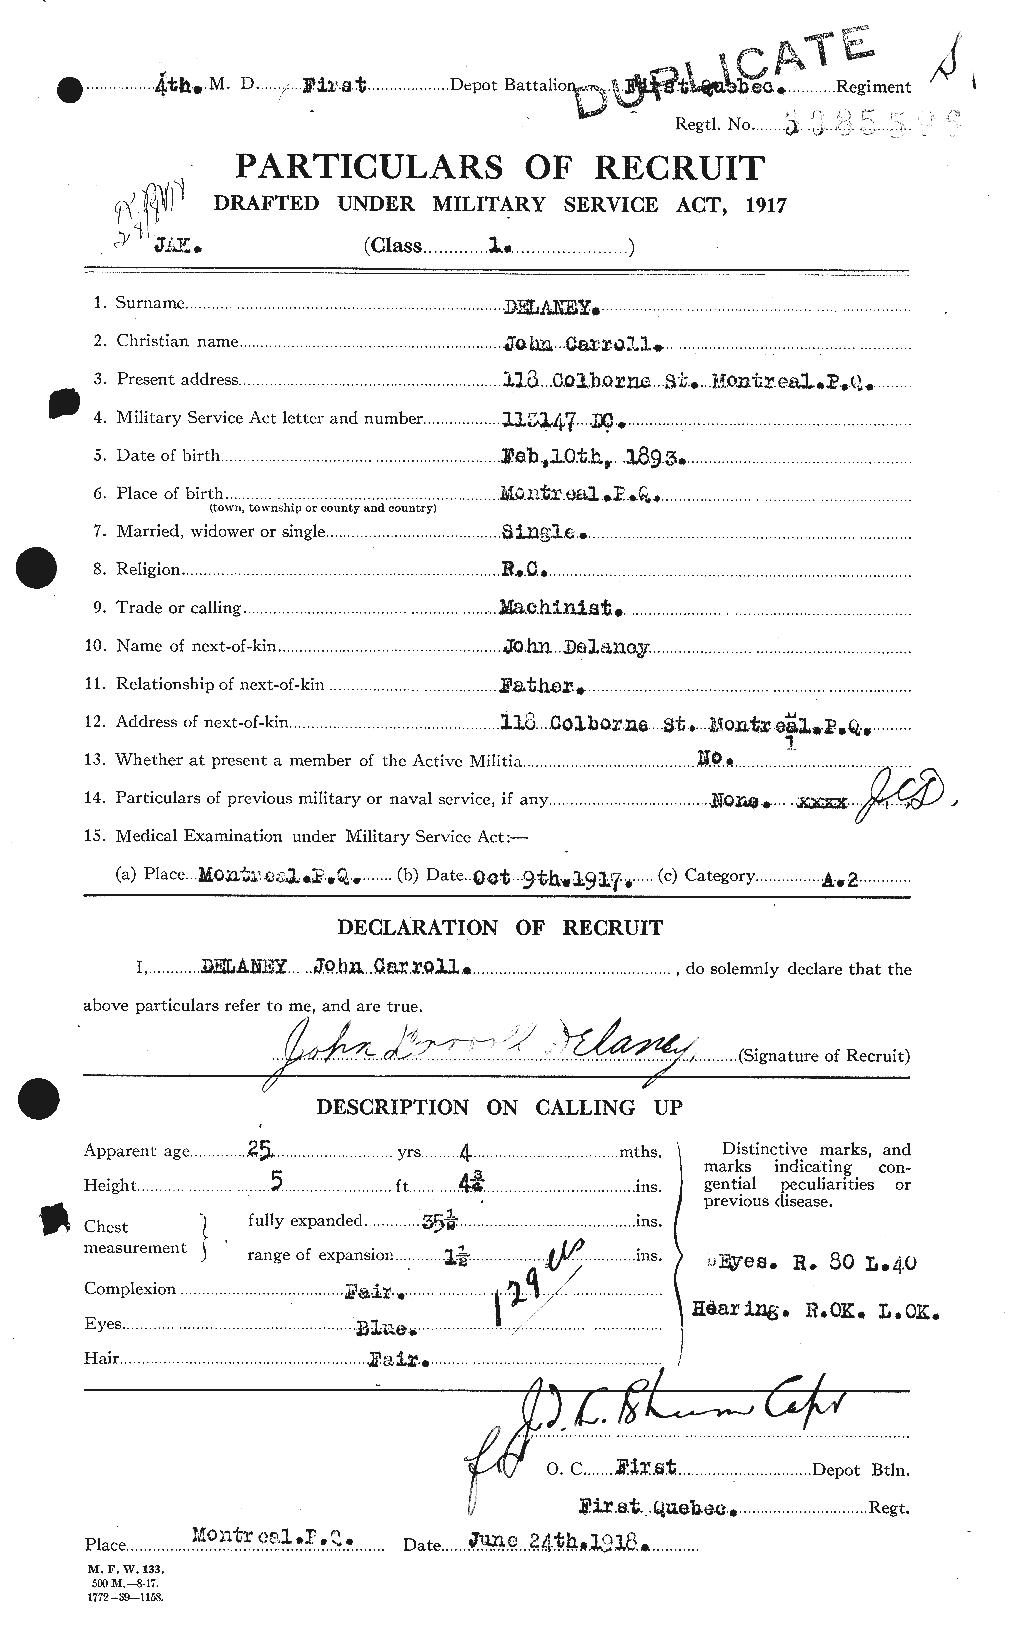 Dossiers du Personnel de la Première Guerre mondiale - CEC 285490a